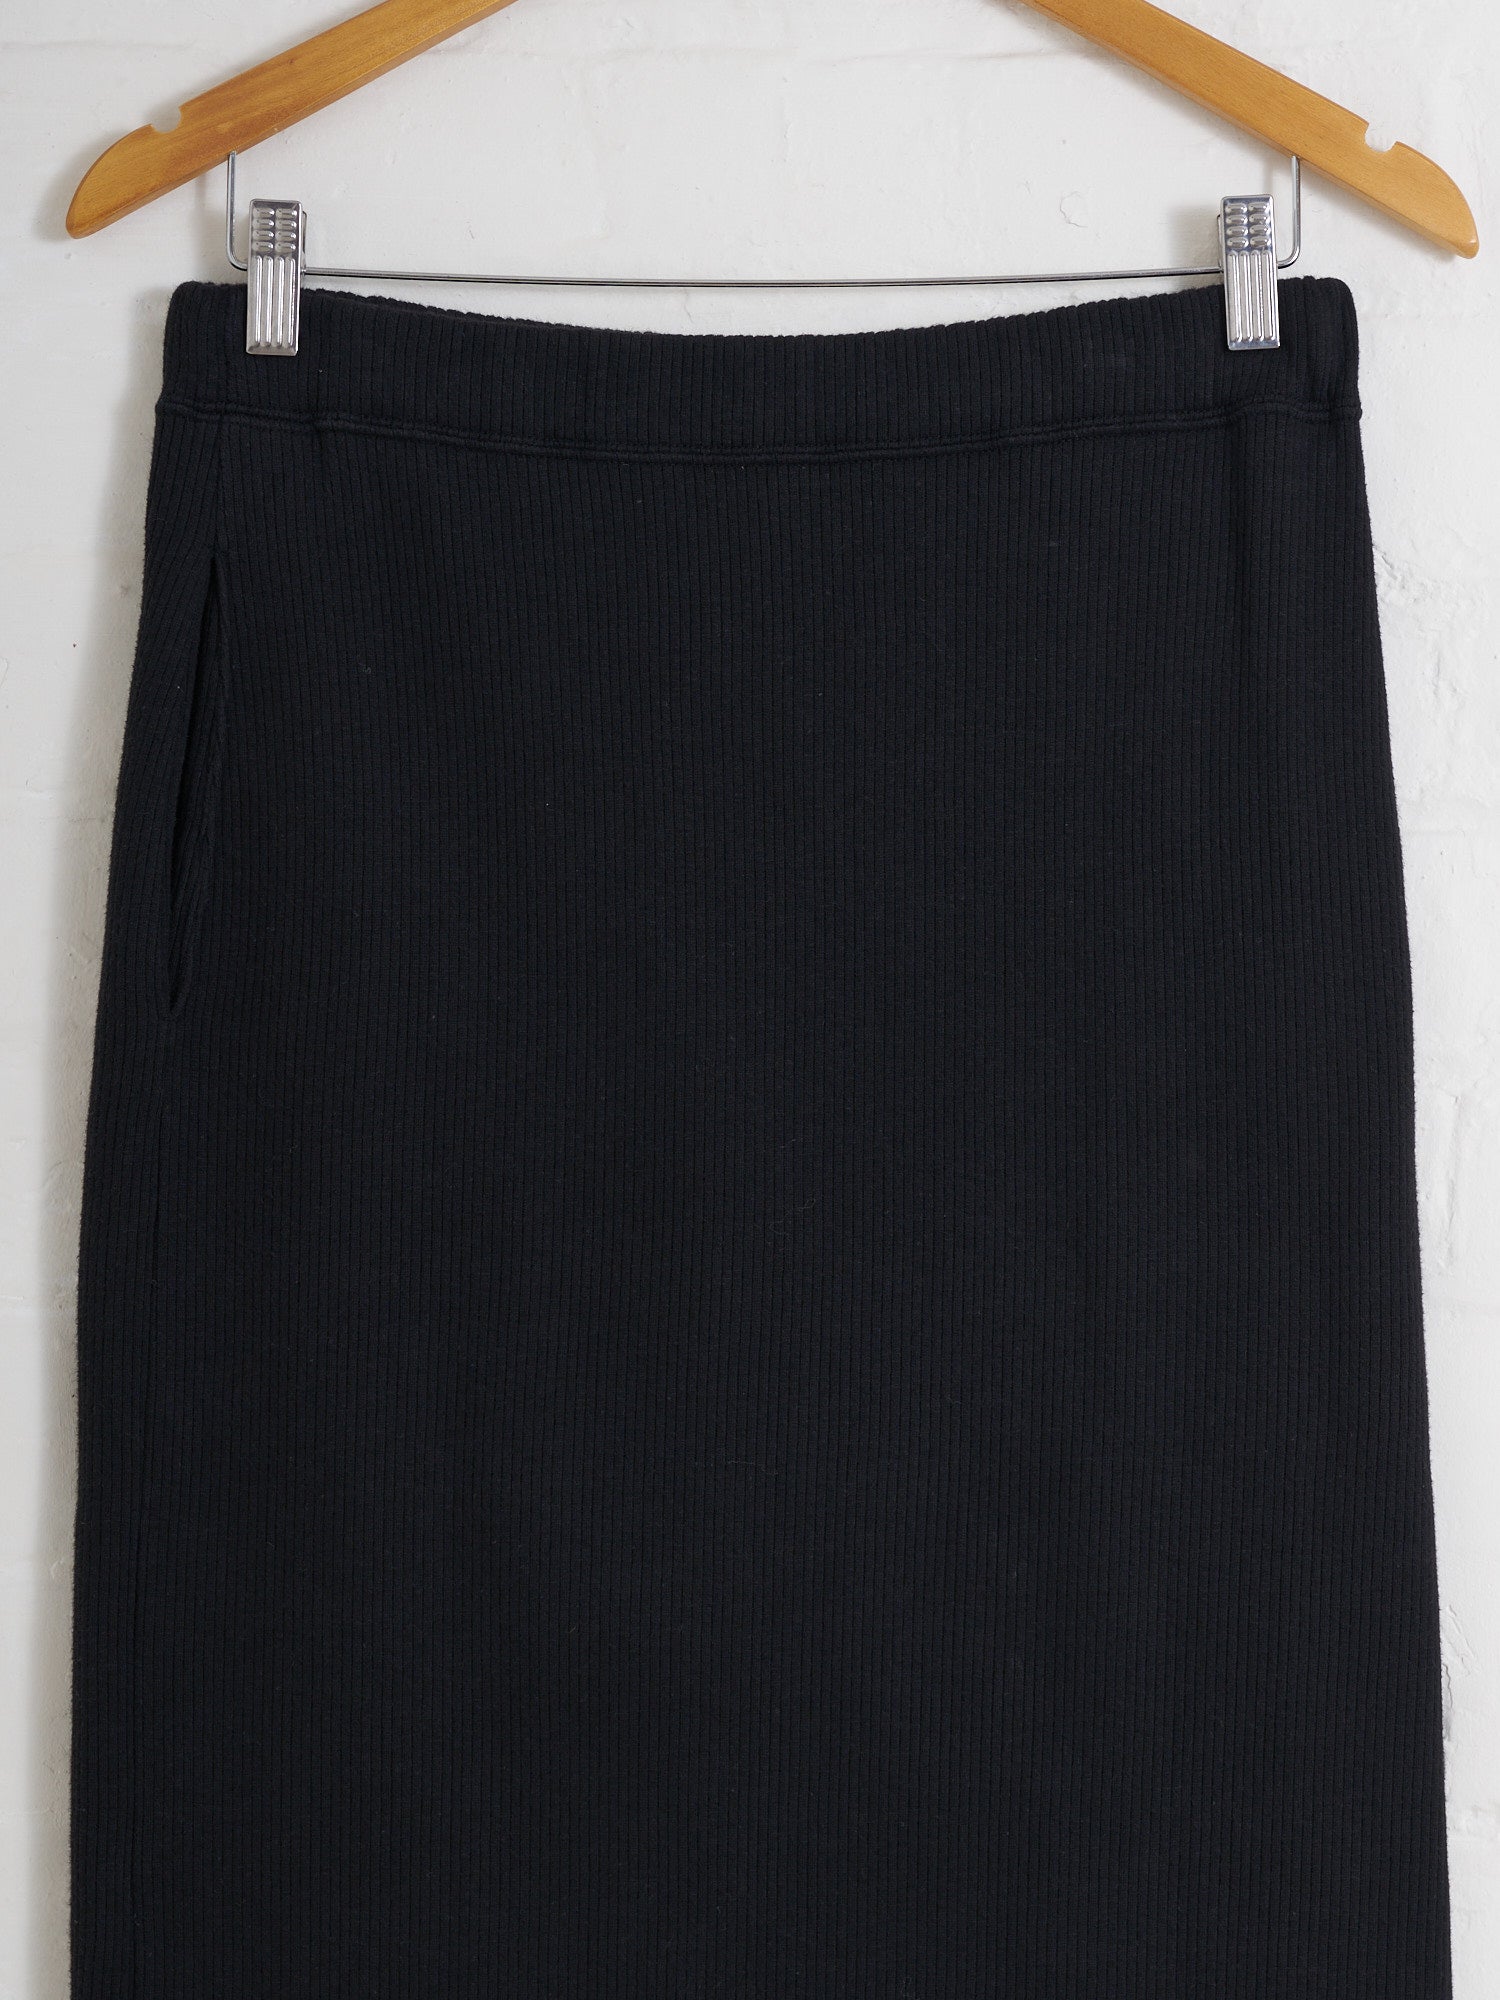 Robe de Chambre Comme des Garcons 1980s black cotton rib elastic waist skirt